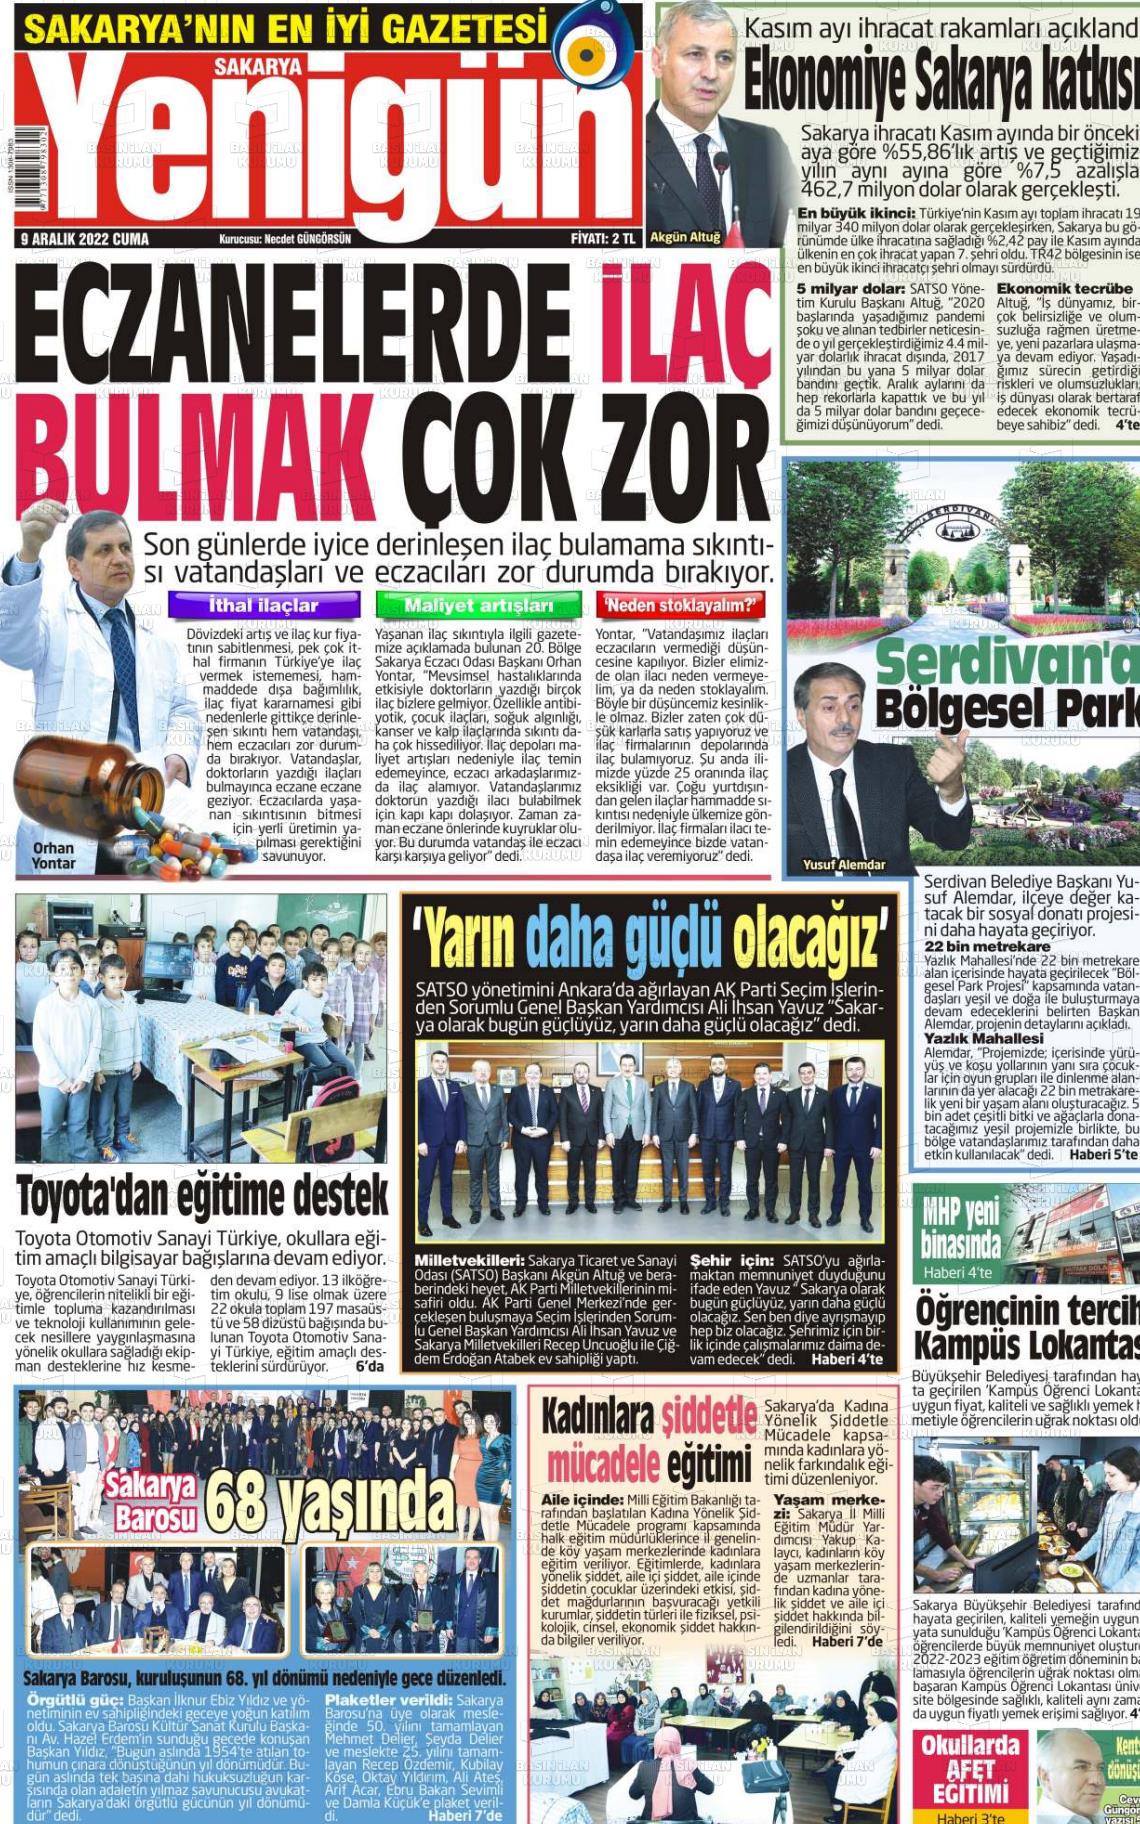 09 Aralık 2022 Sakarya Yenigün Gazete Manşeti